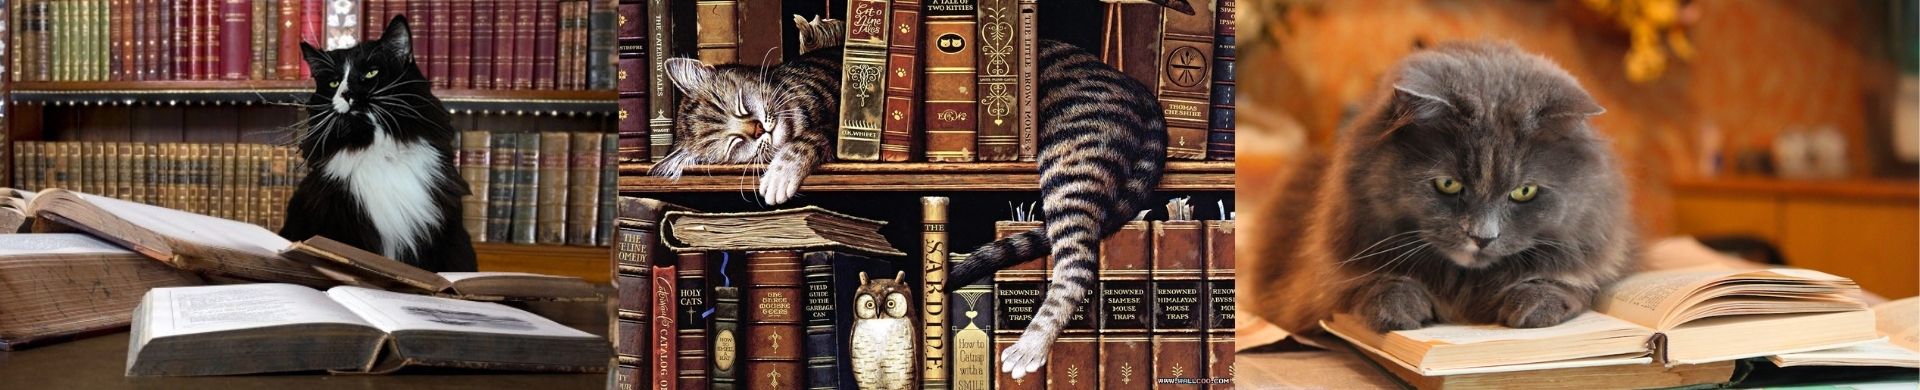 I gatti e la letteratura fantastica - Sistema Bibliotecario del Comune di  Pavia